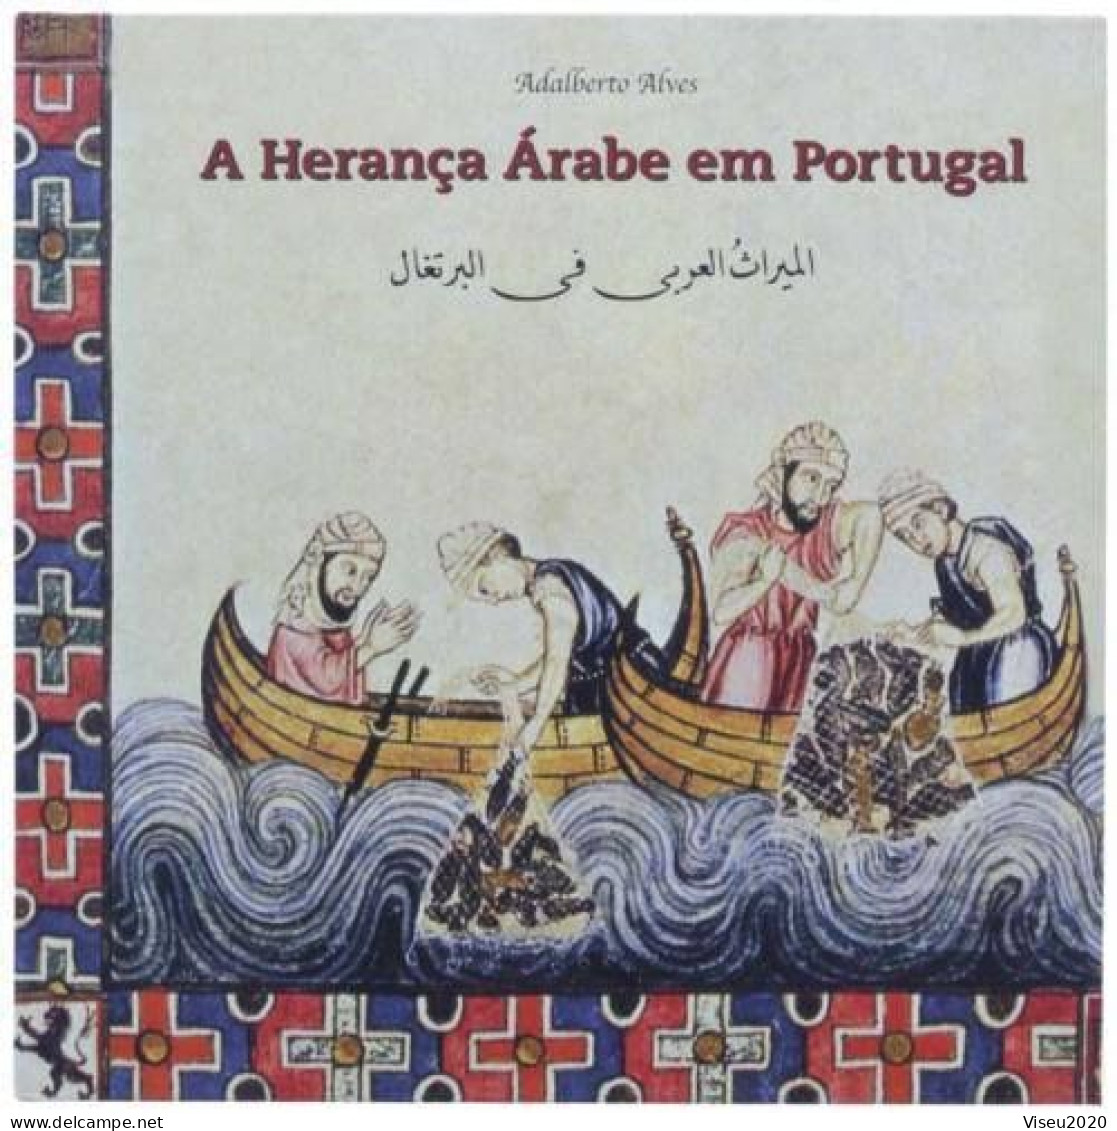 Portugal 2001 - A Herança Árabe Em Portugal - LIVRO TEMATICO CTT - Book Of The Year